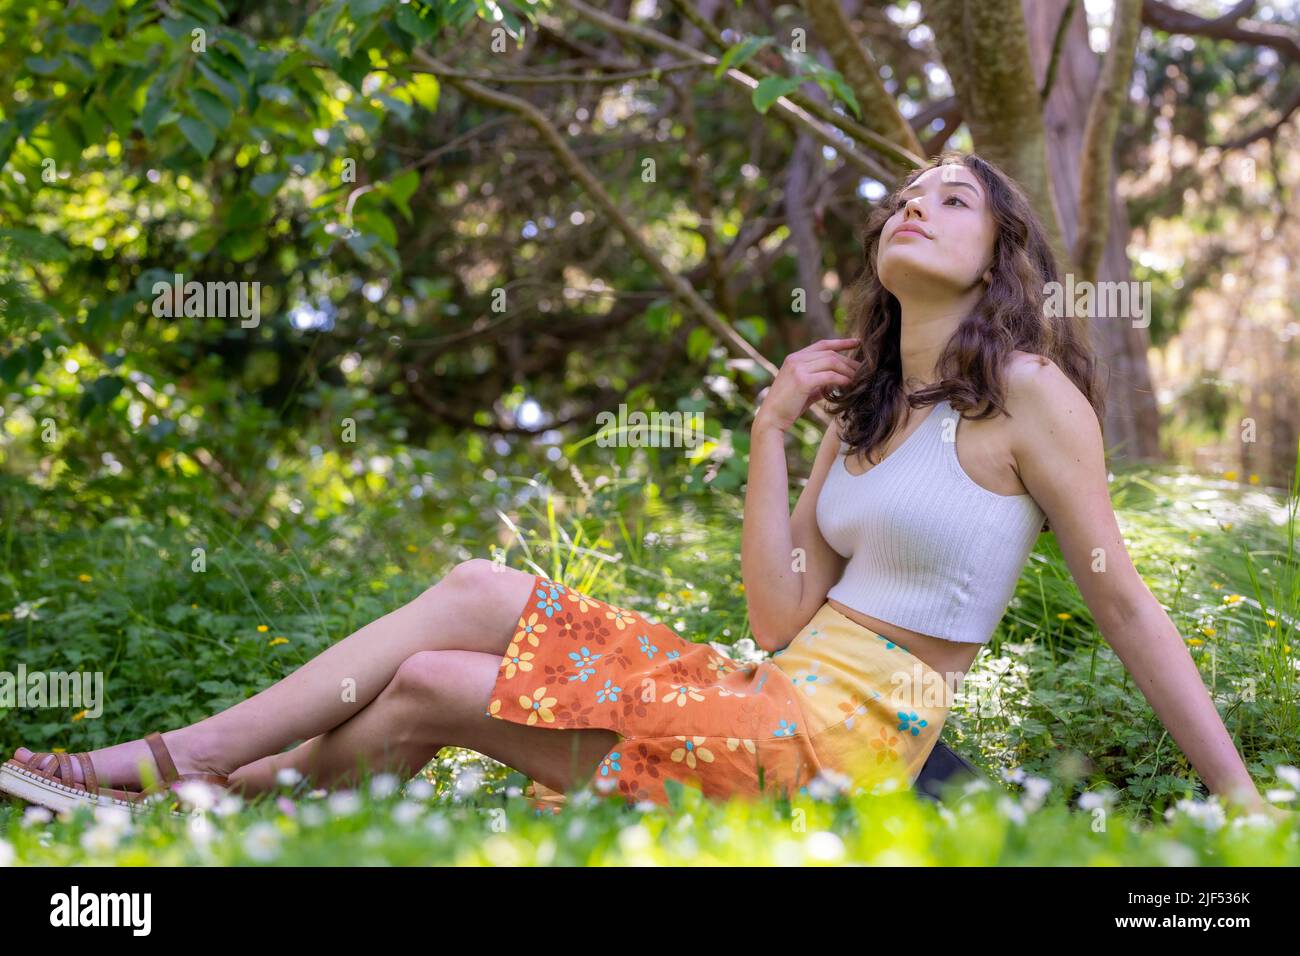 Portrait d'une jeune femme assise dans un jardin en jupe et brassière orange Banque D'Images